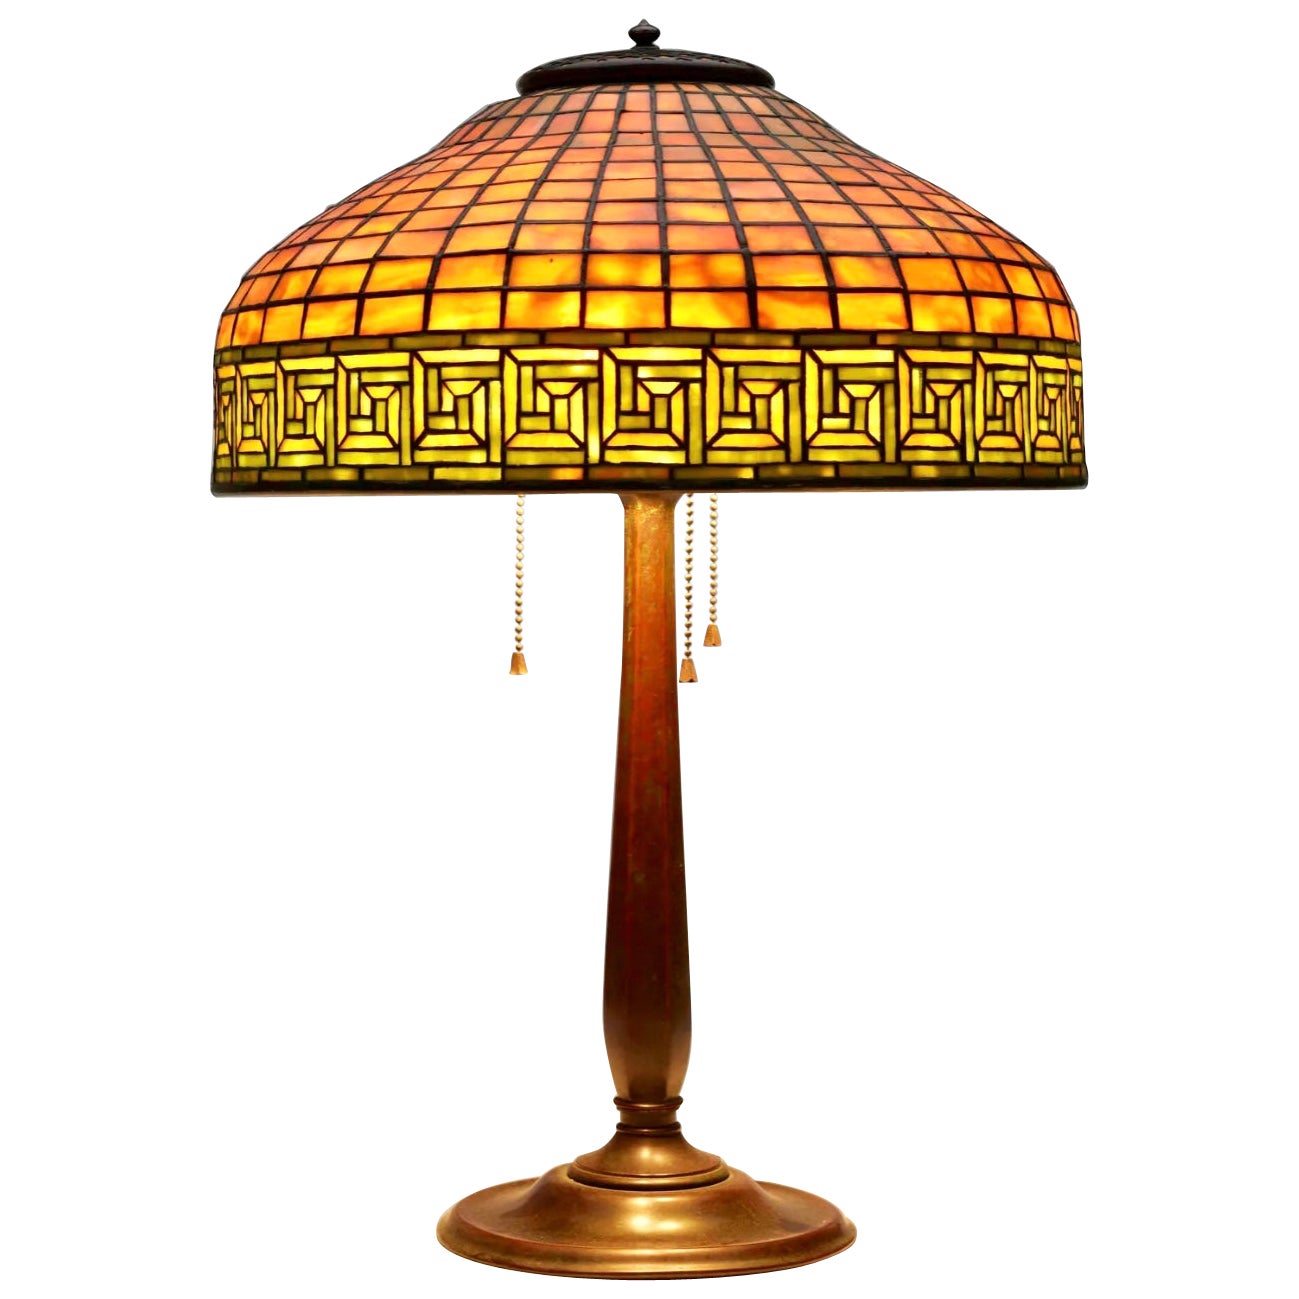 Tiffany Studios - Lampe de table à clé grecque